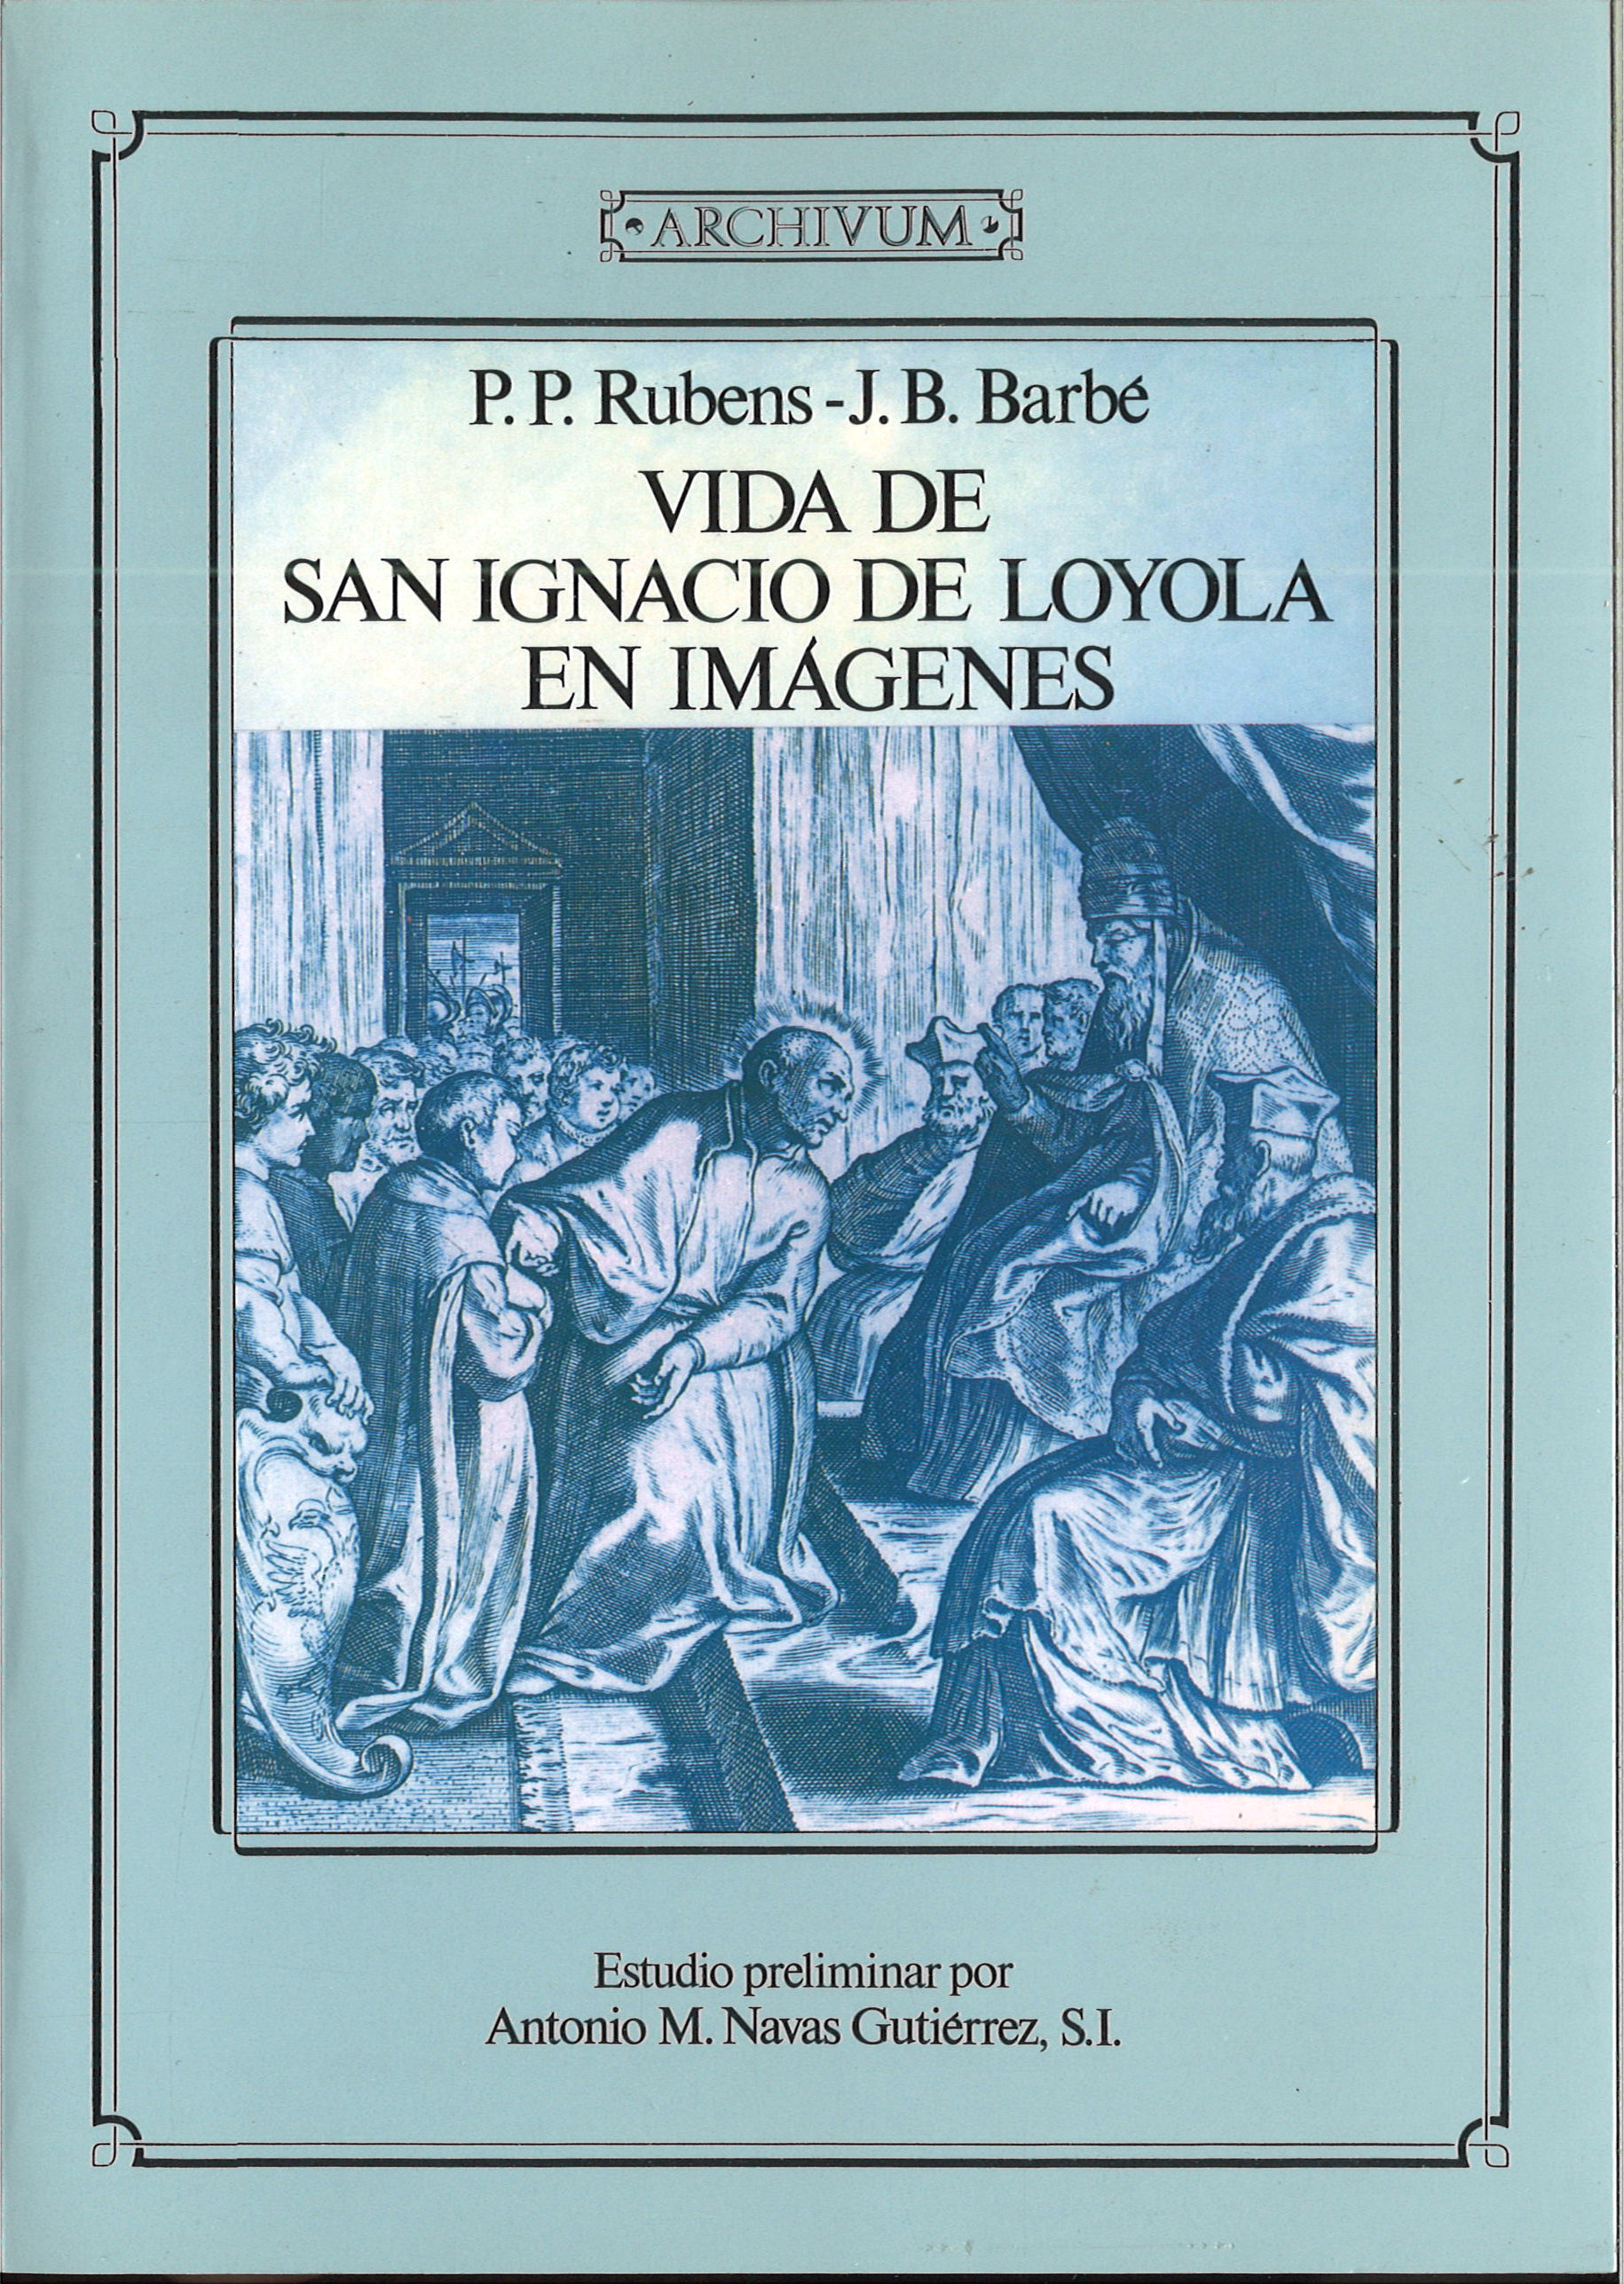 Imagen de portada del libro Vida de San Ignacio de Loyola en imágenes